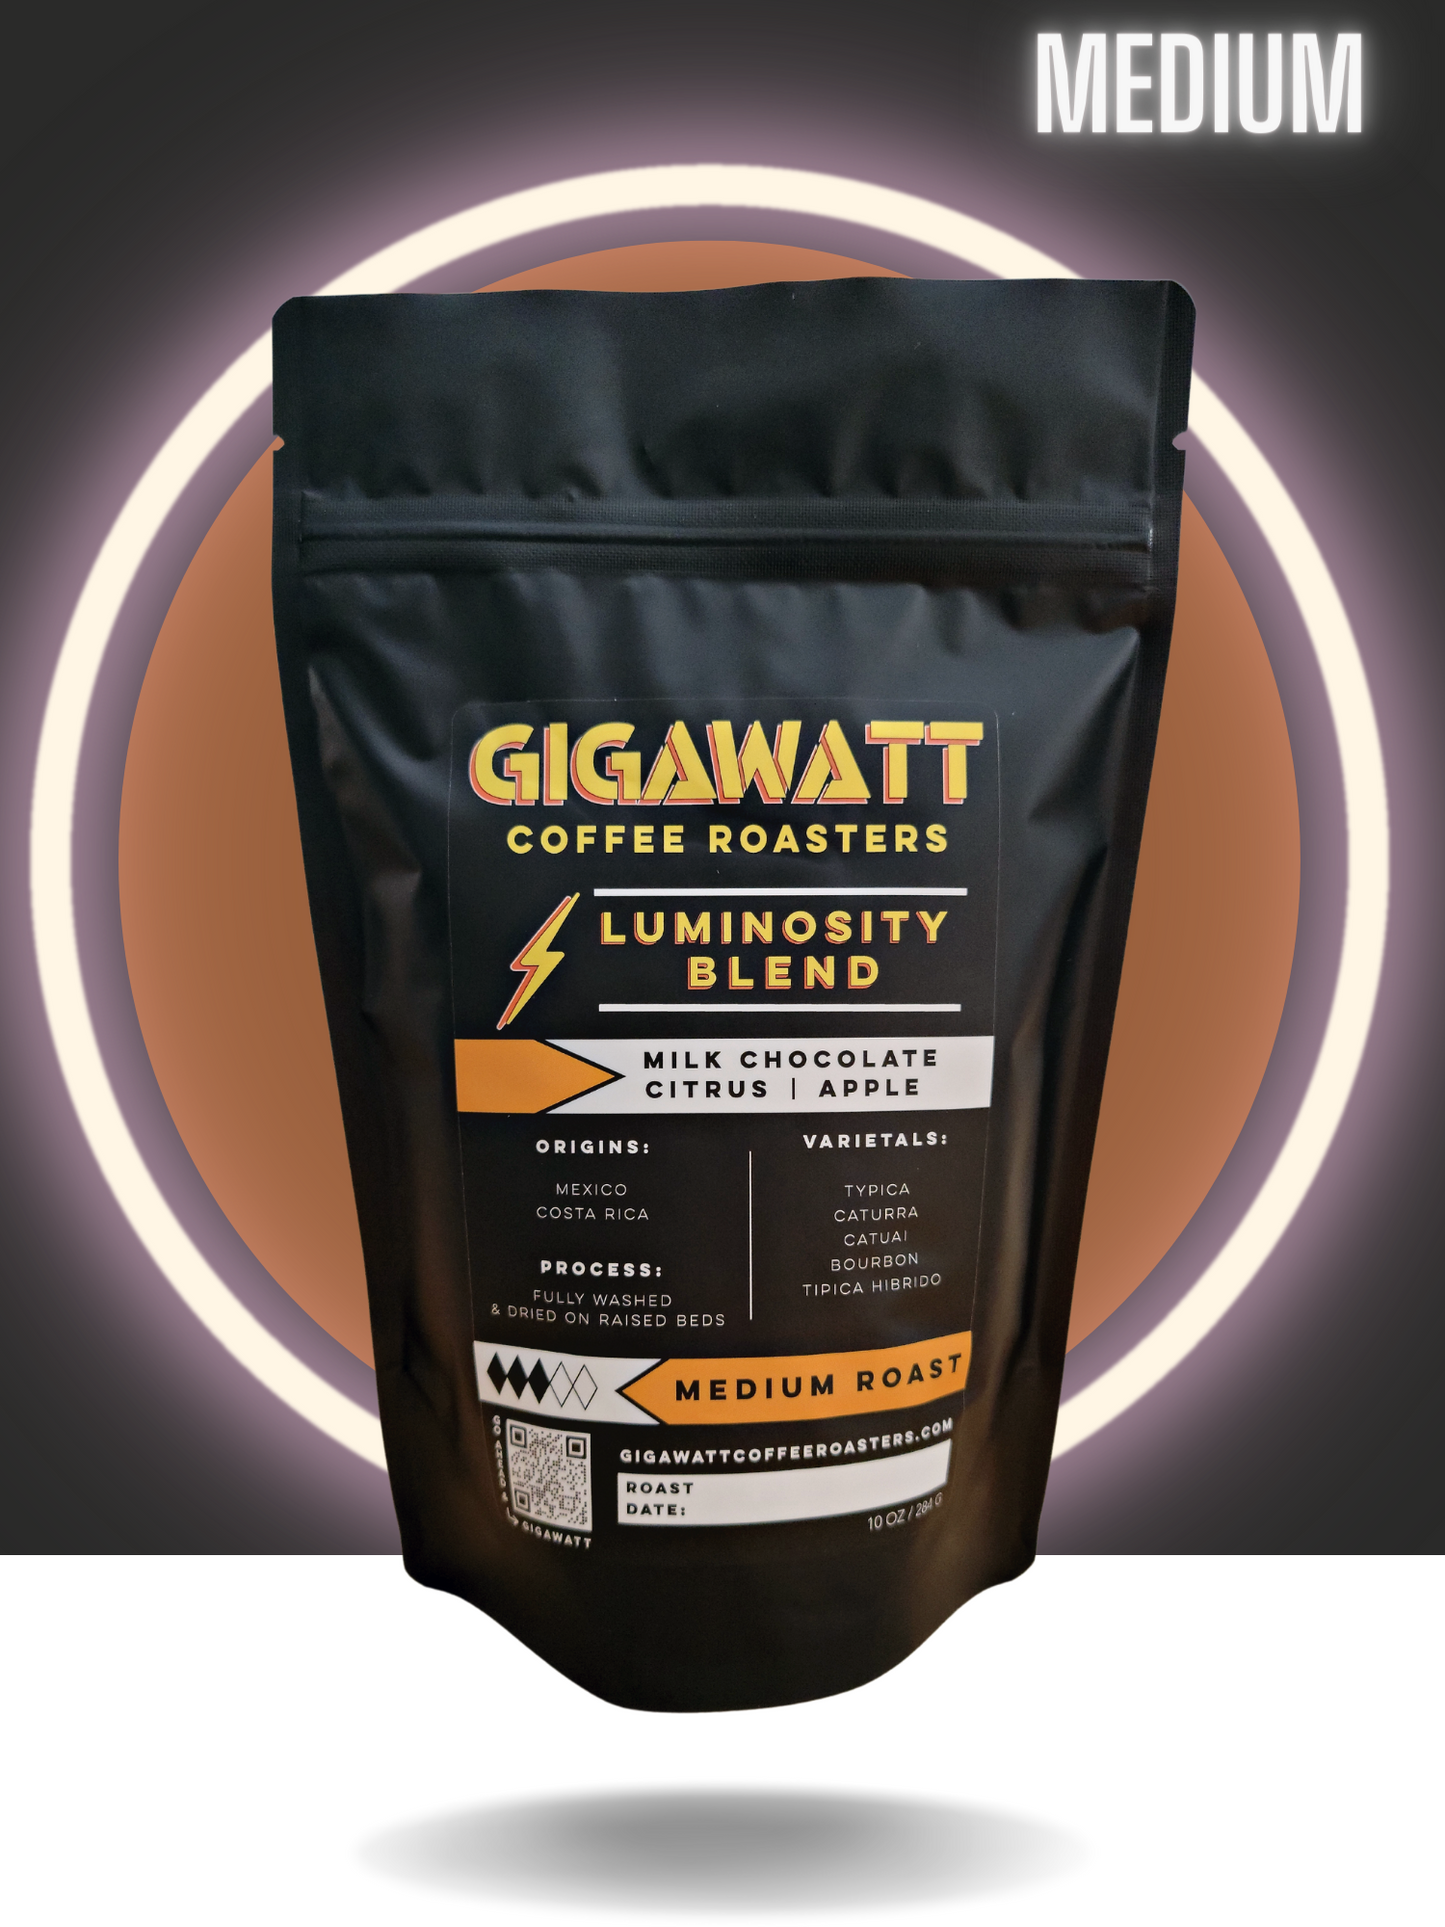 Black Bag of Gigawatt Luminosity Breakfast Blend Coffee, Medium Roast.